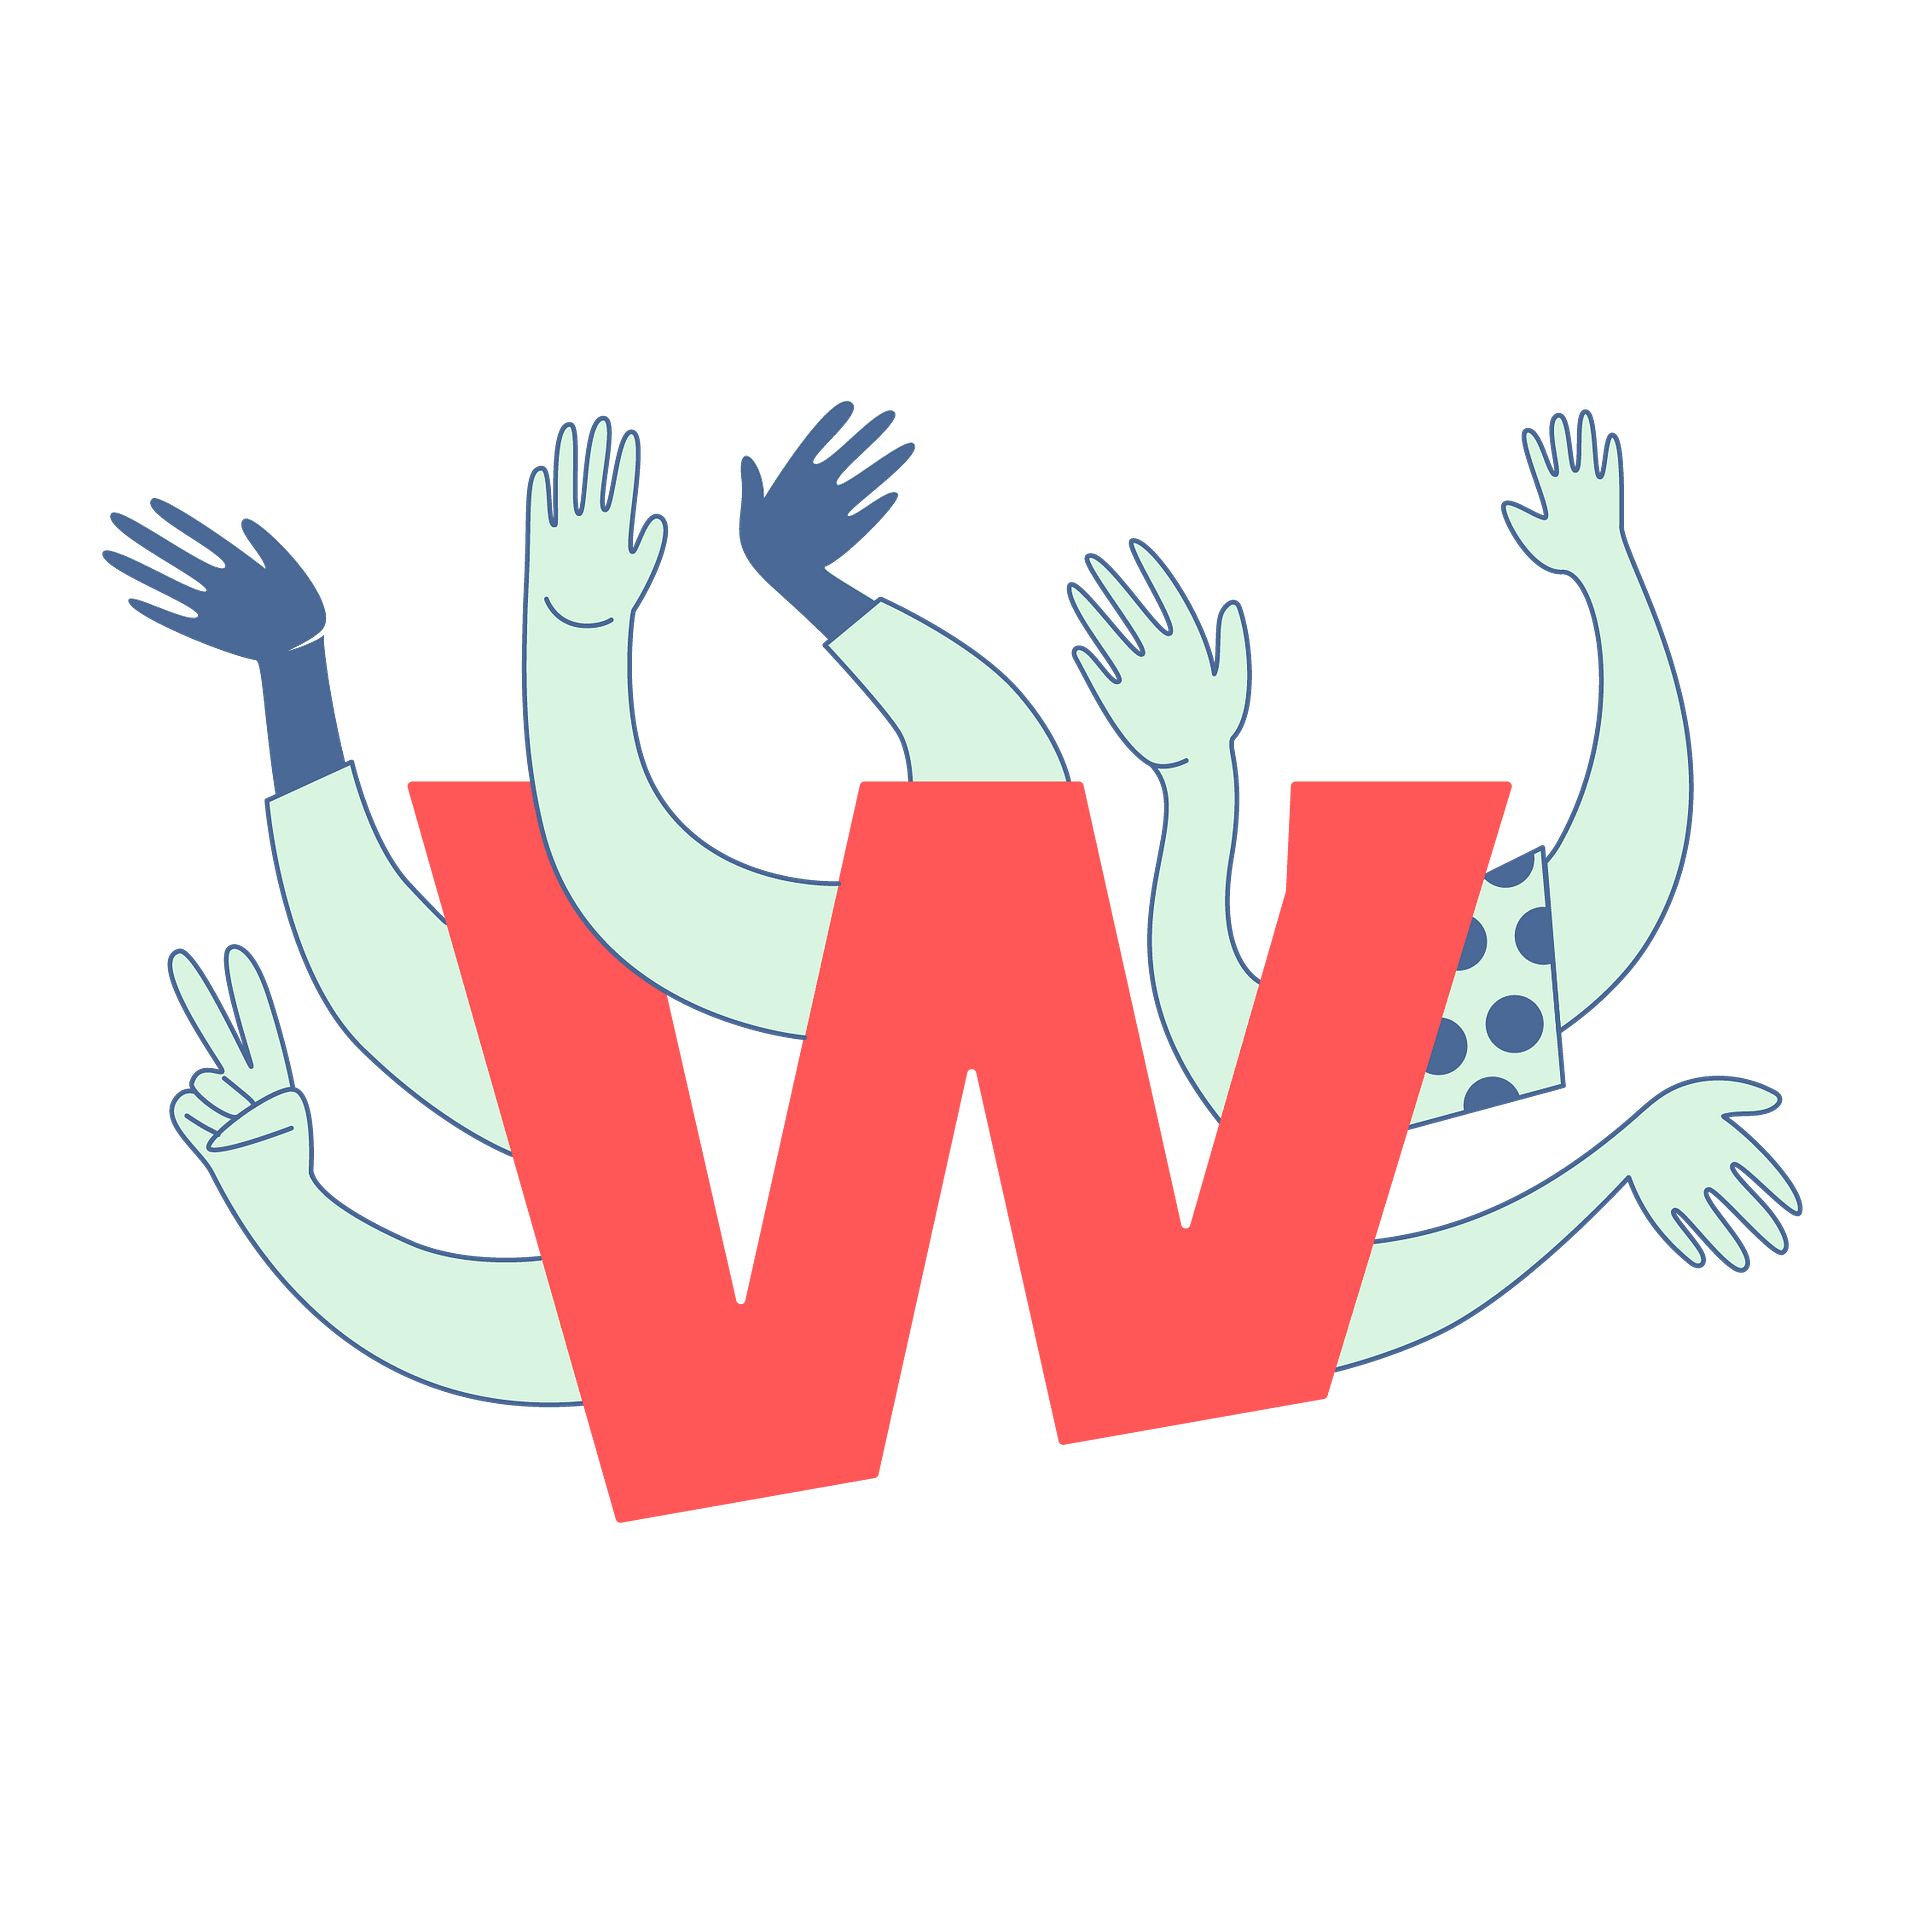 Header Illustration - Grafische Illustration in rot, blau und hellgün des roten Wigwam `W´-Logos mit winkenden stilisierten, freudigen und winkenden Händen daraus hervortretend.